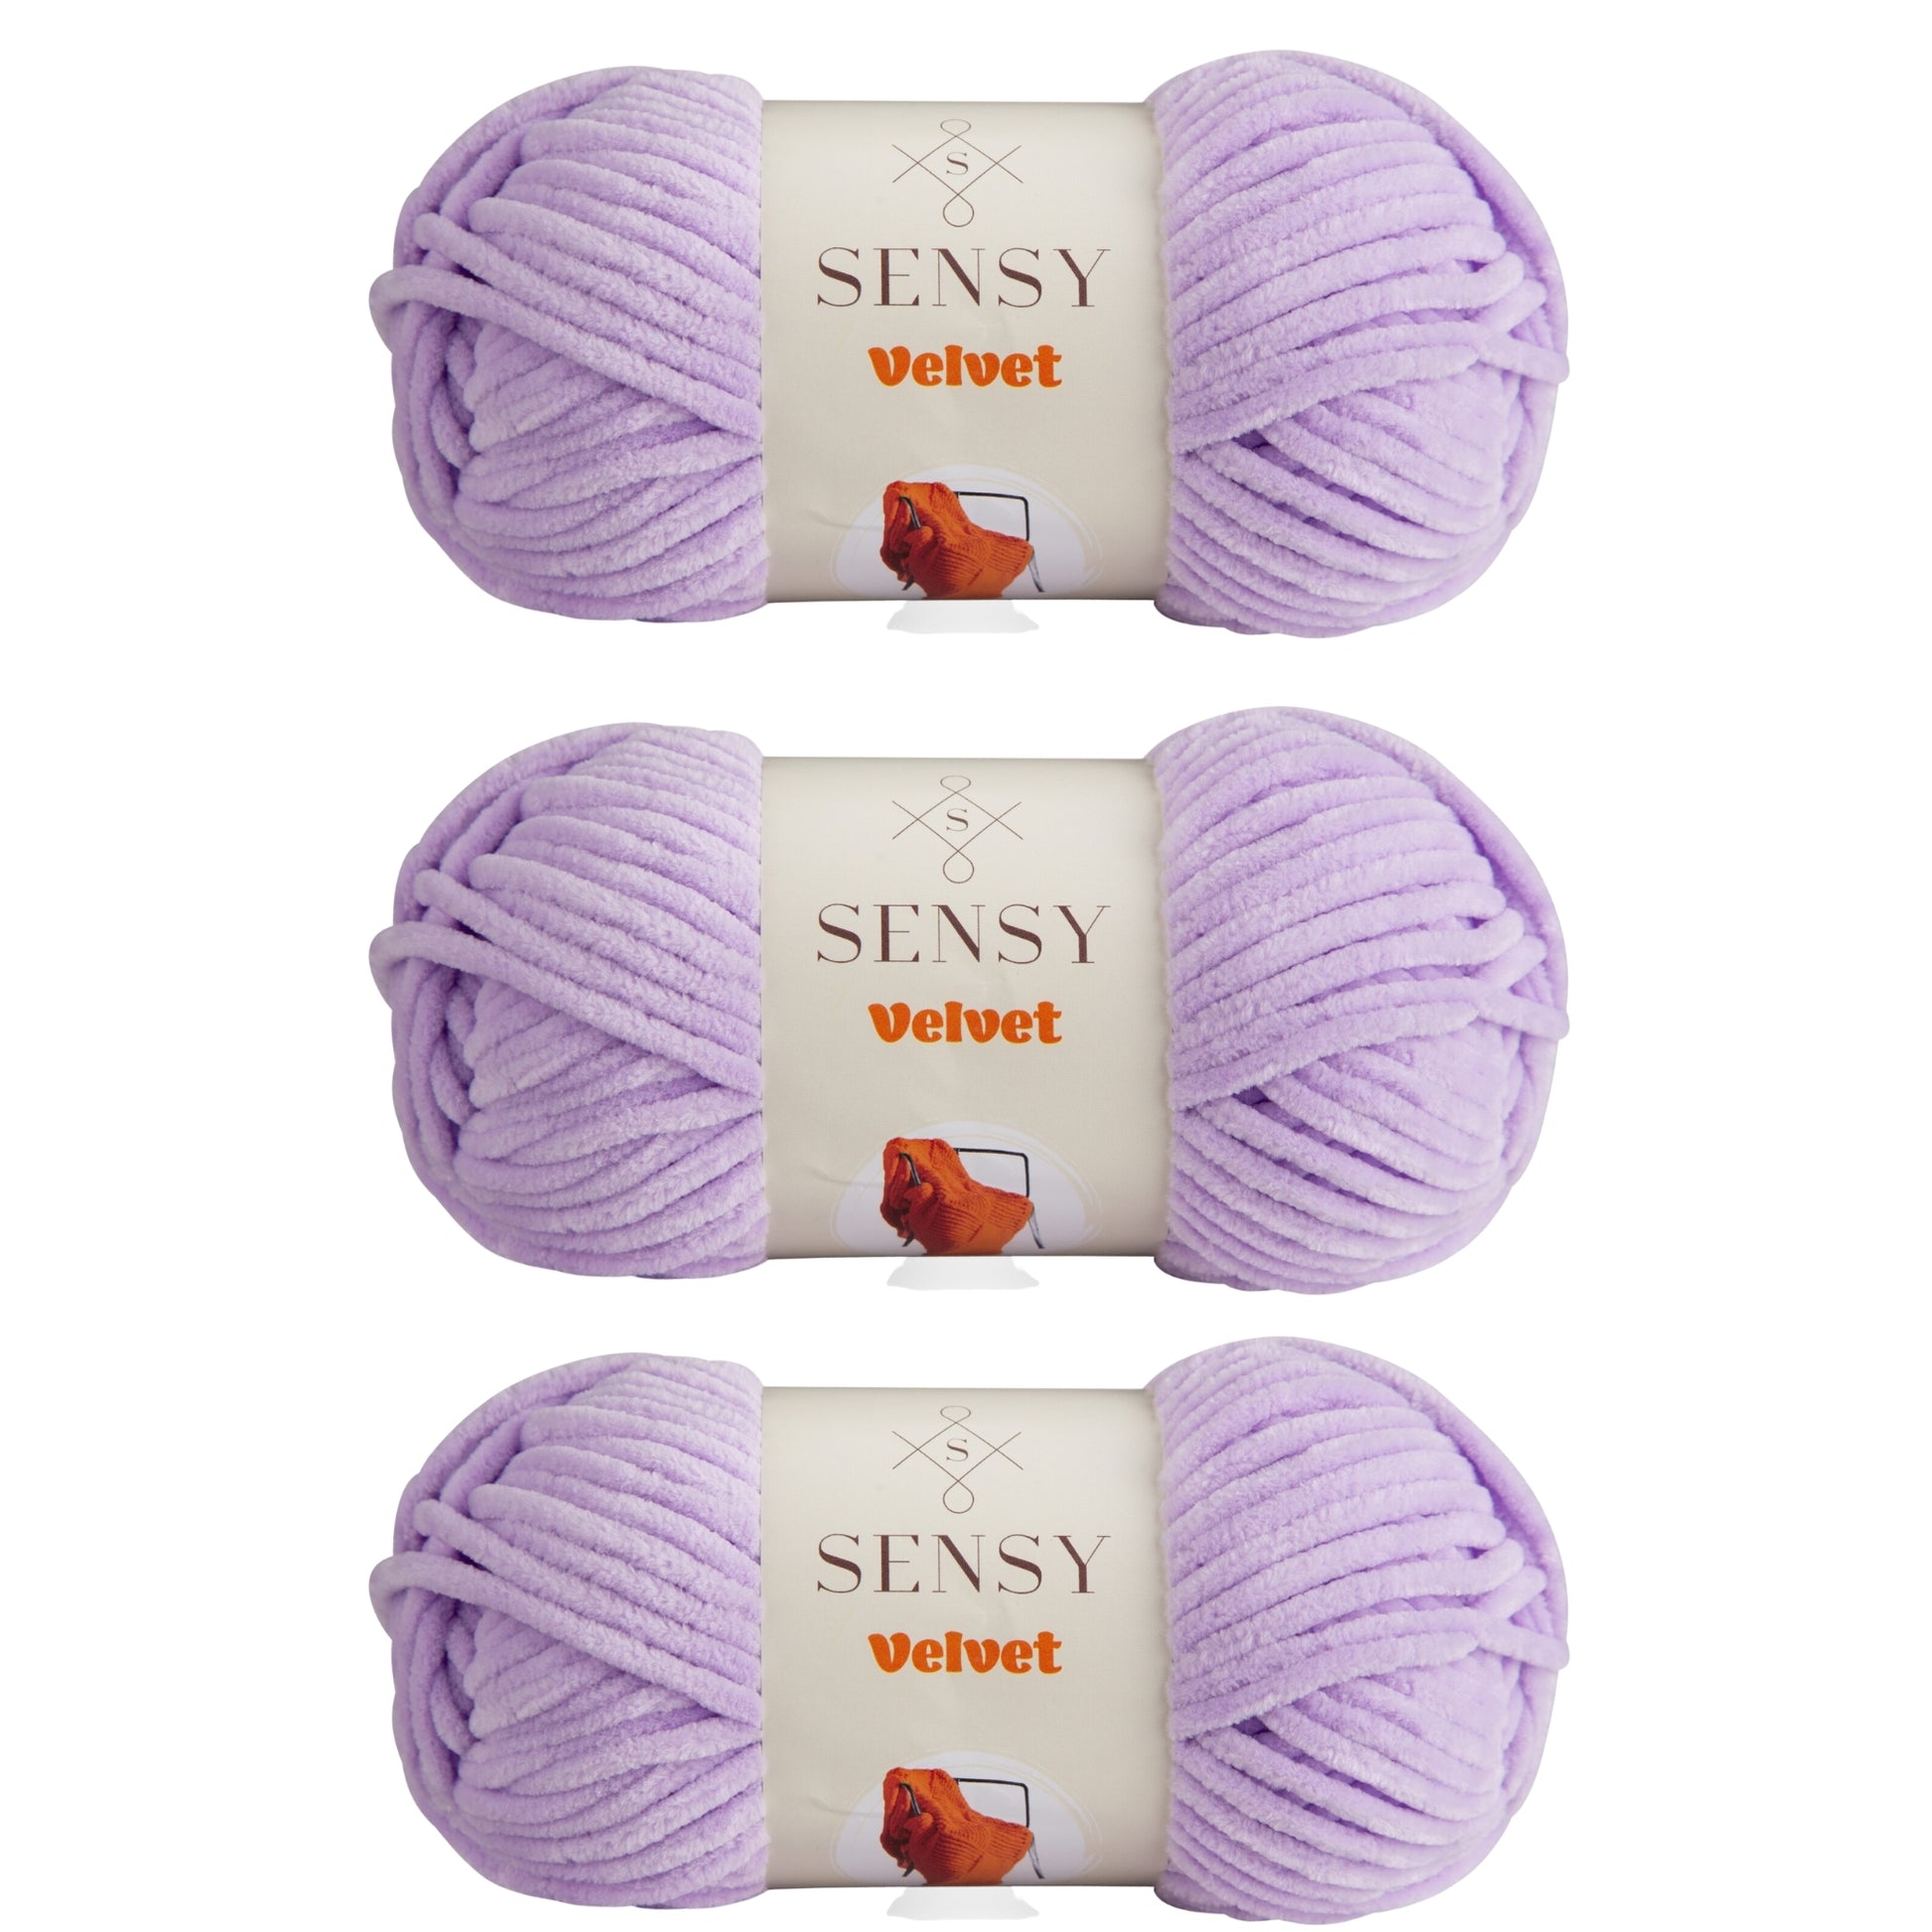 Sensy Velvet Yarn, Blanket Yarn, 3.5 oz, 132 Yards, Gauge 5 Bulky